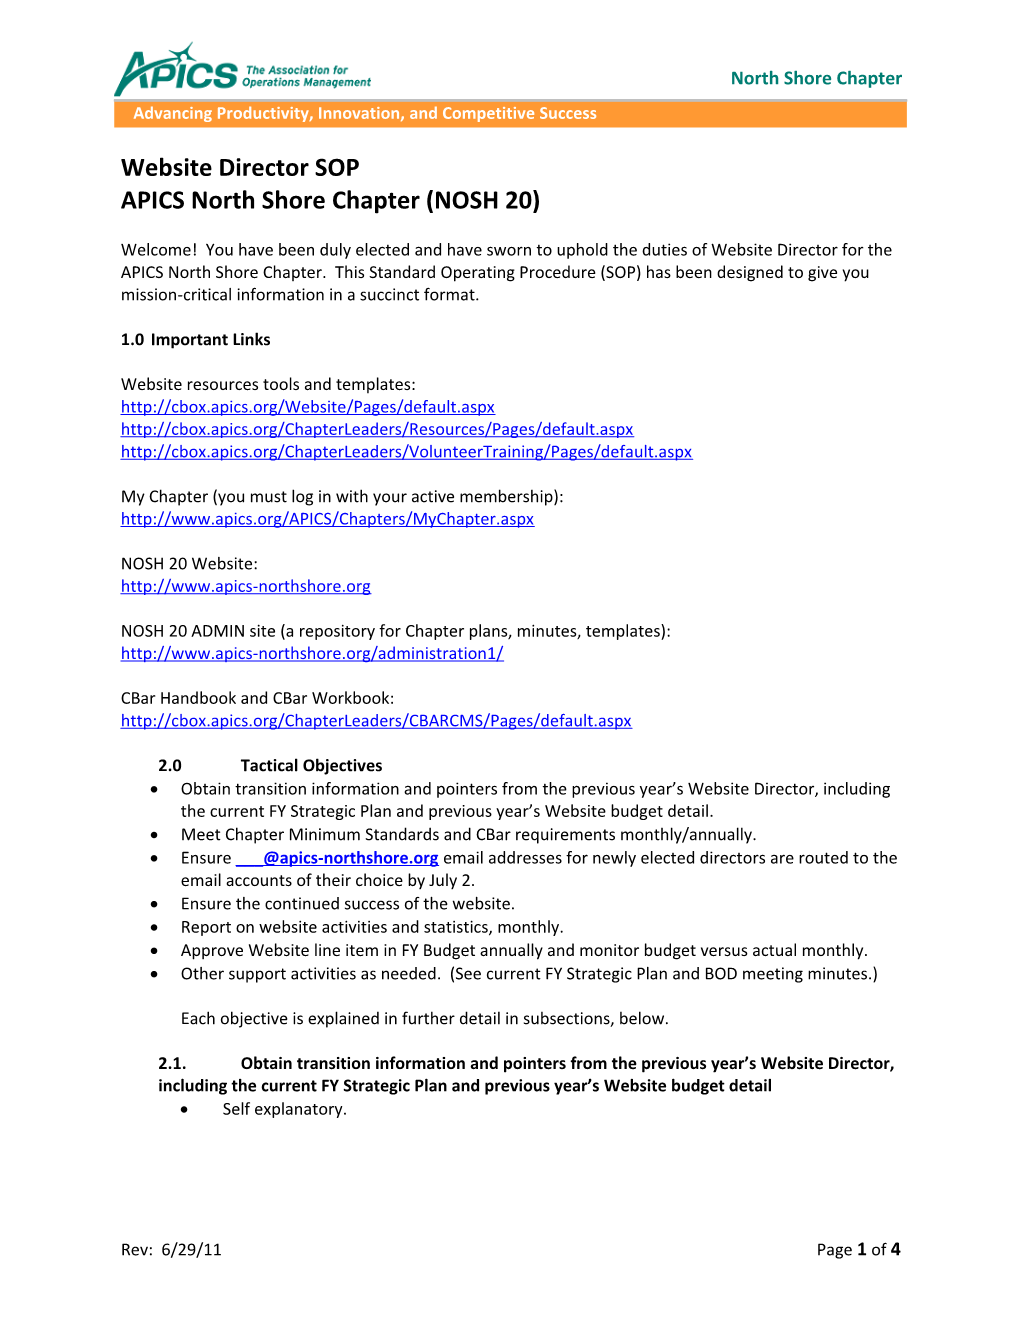 APICS North Shore Chapter (NOSH 20)